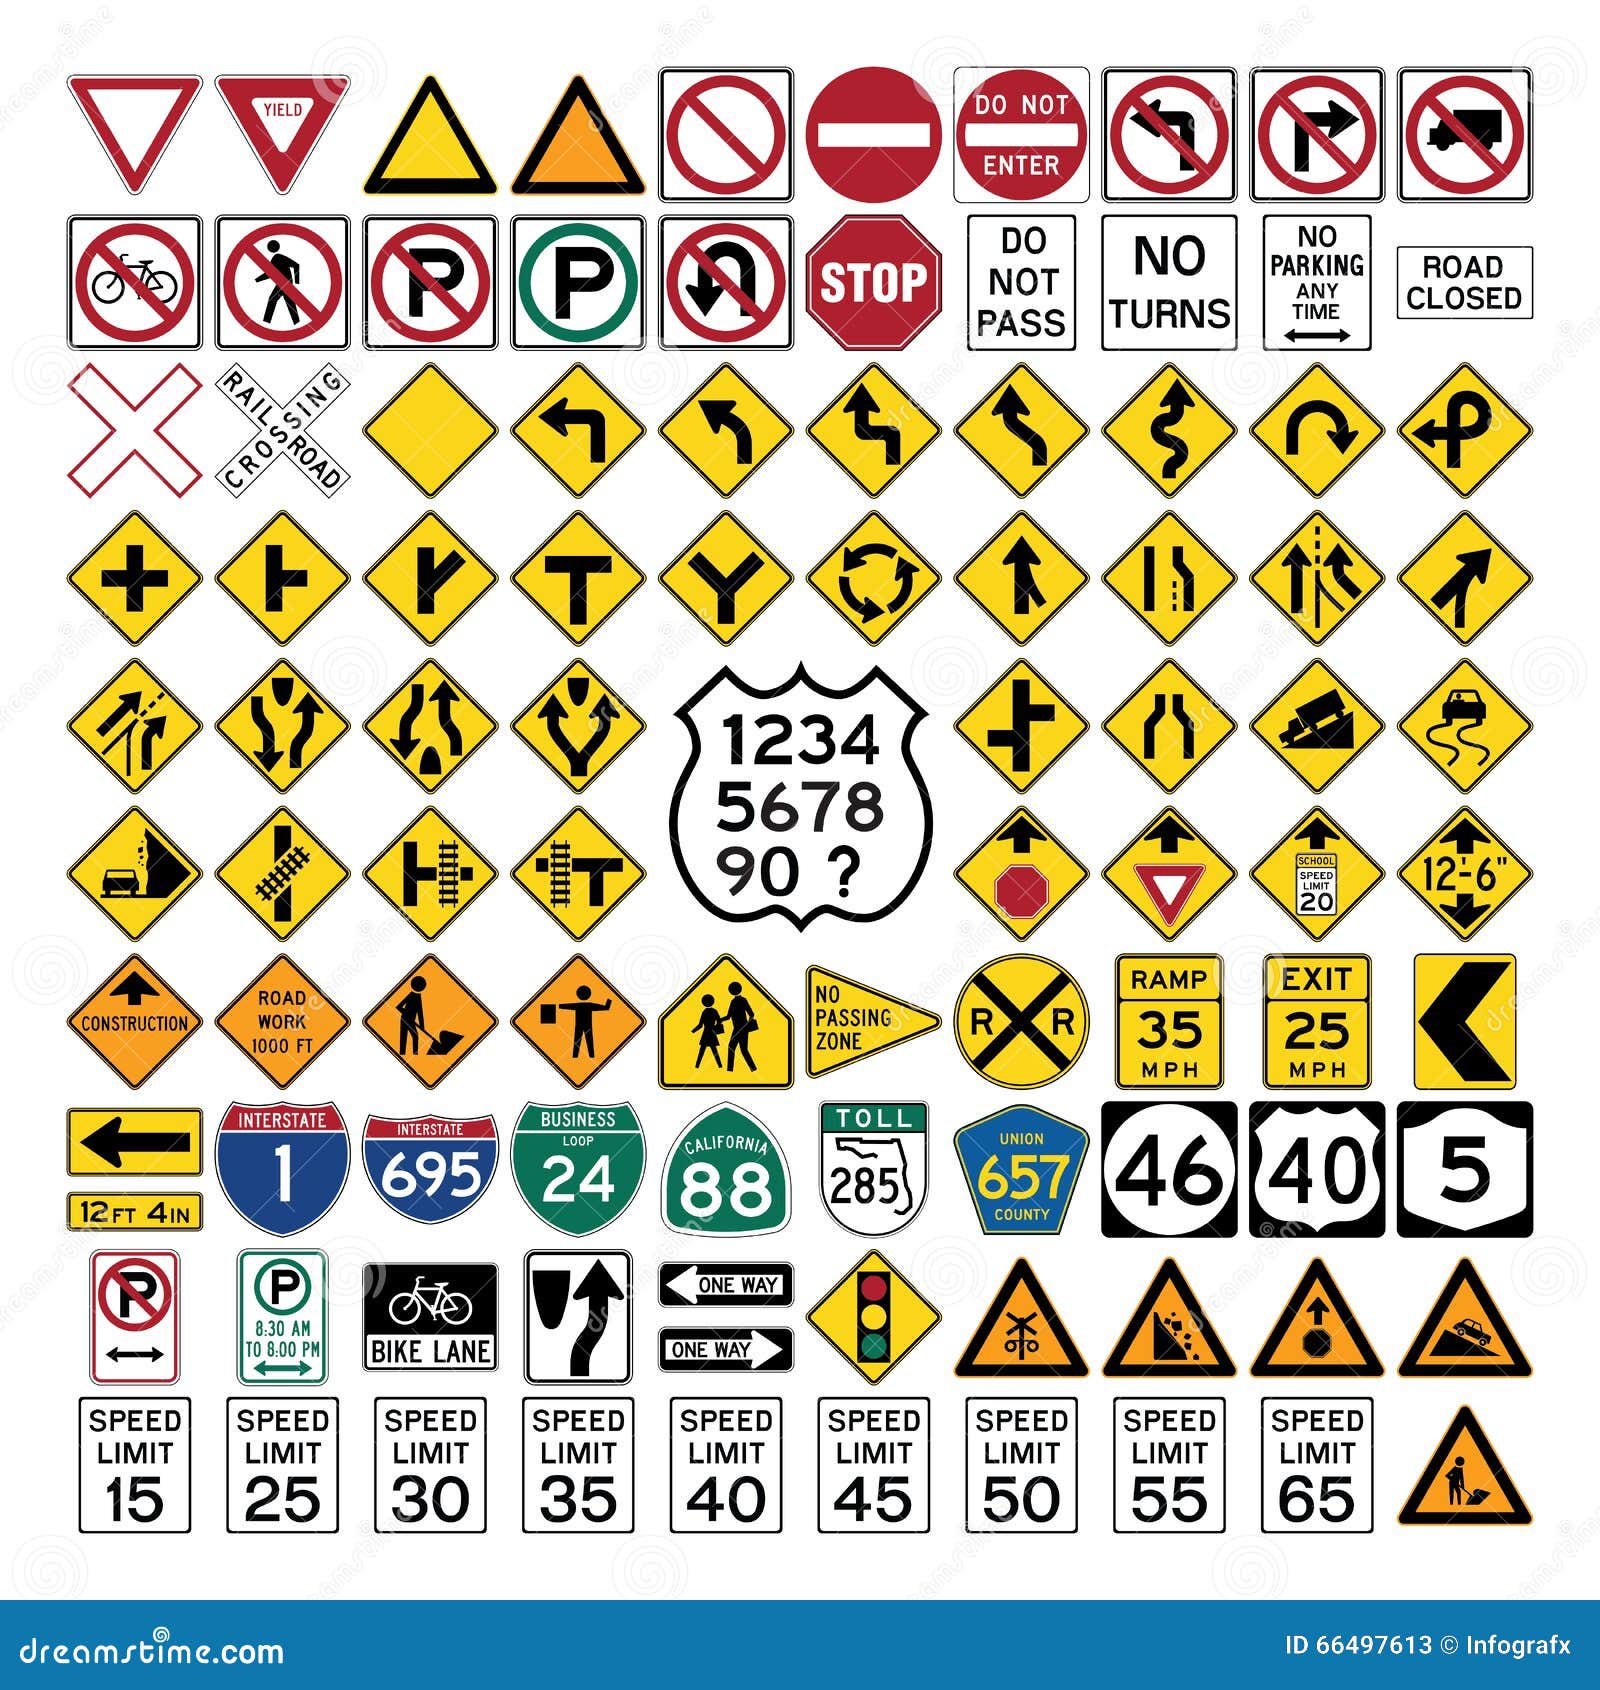 Sinal de estrada realista símbolo de aviso em forma de diamante